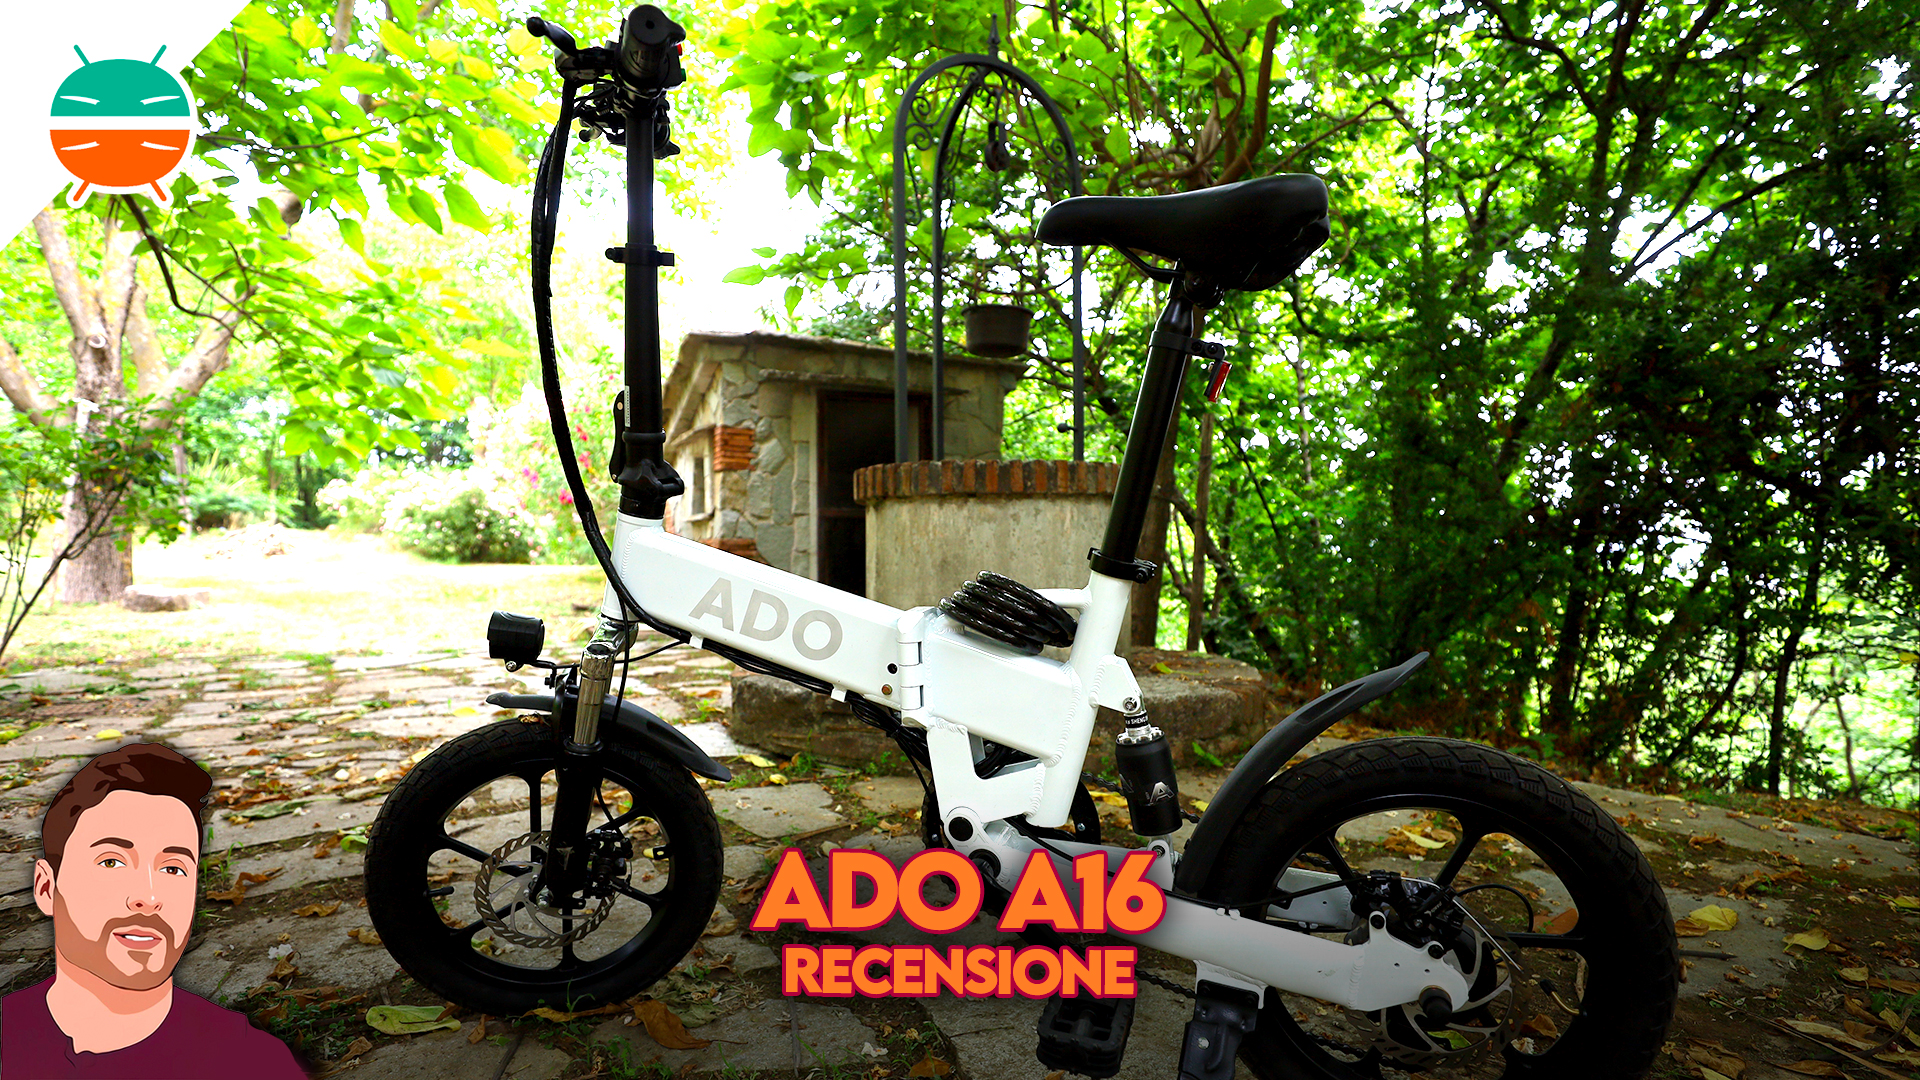 Análise ADO A16: compacta, potente e super silenciosa 